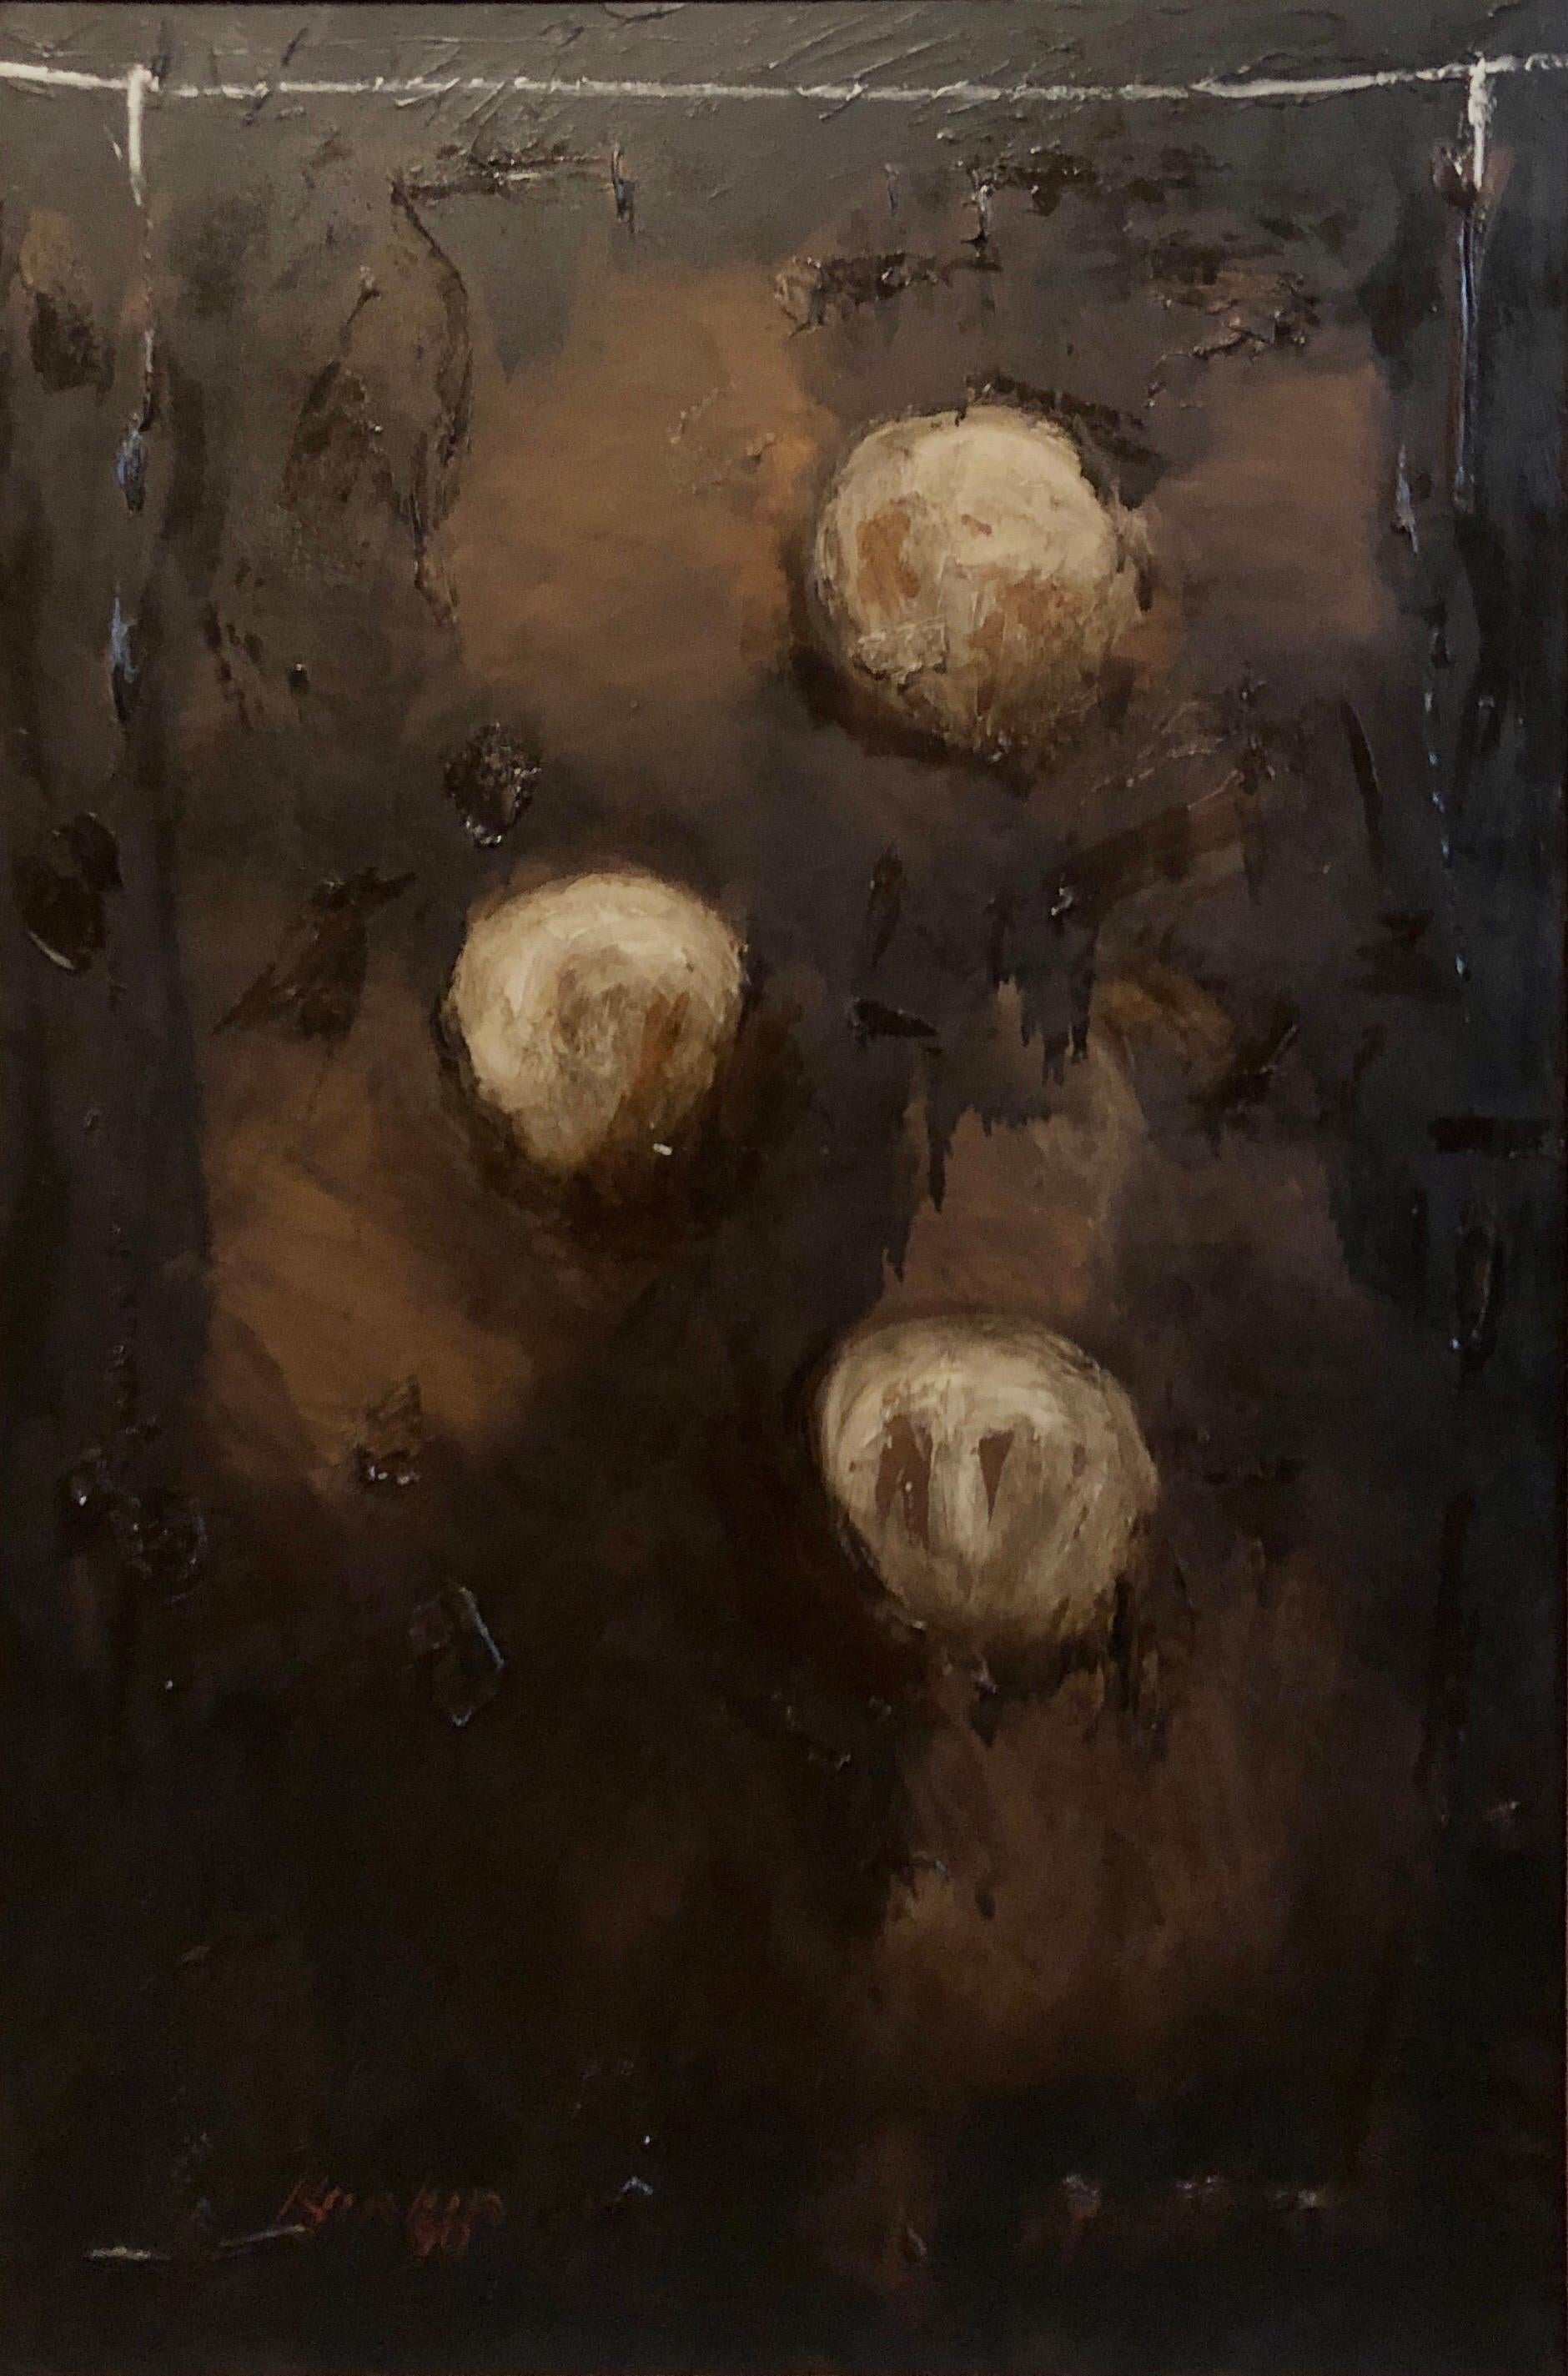 David Rankin Abstract Painting – Abstrakt-expressionistisches australisches Ölgemälde